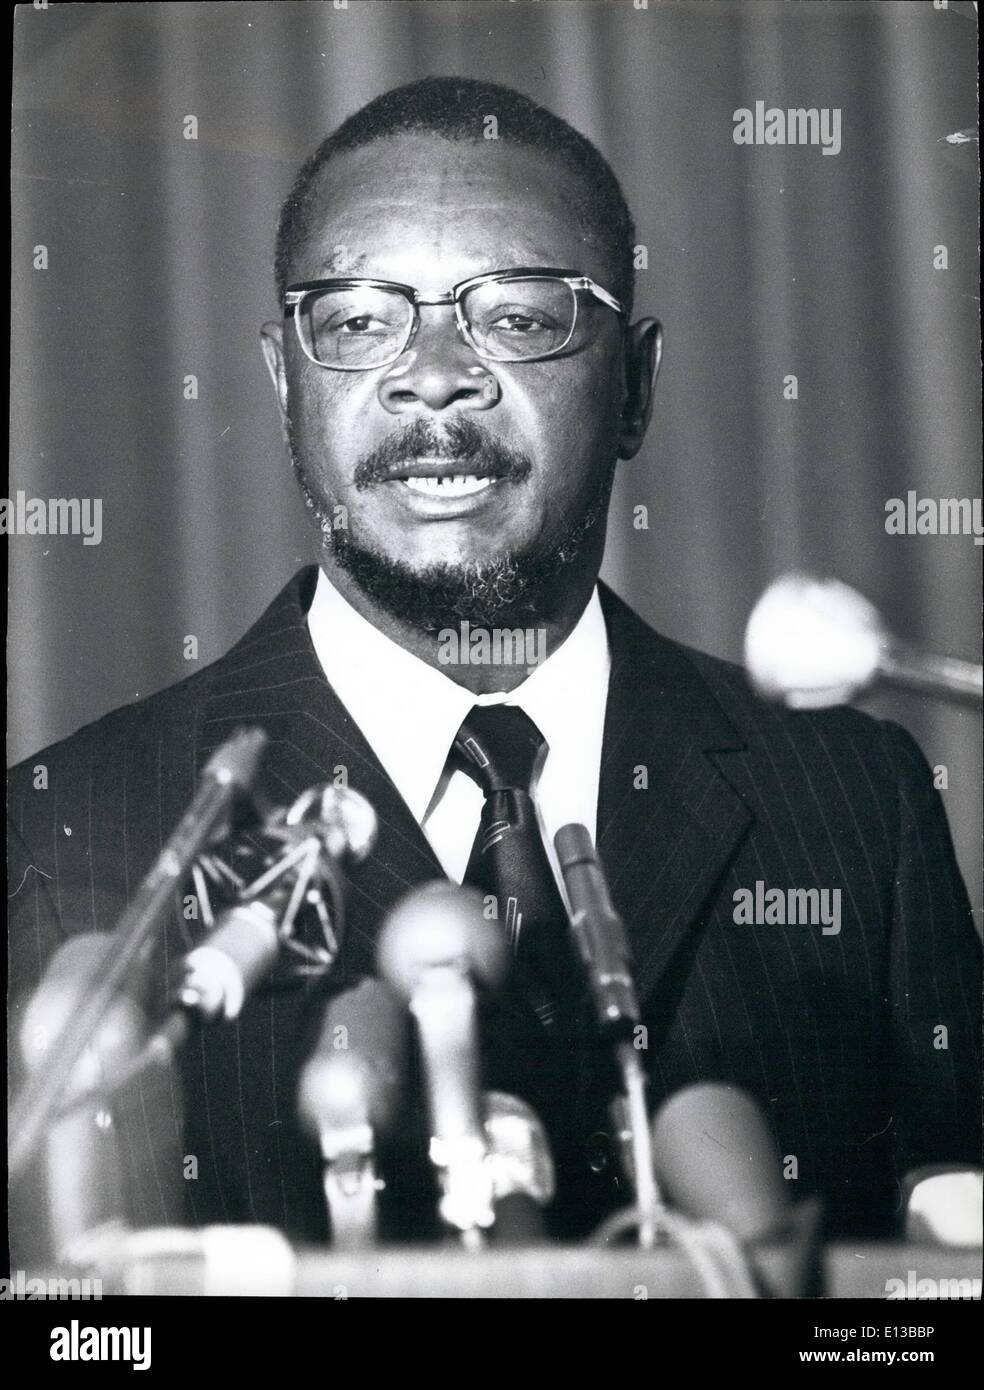 29 février 2012 - Crédits:Camerapix Empereur Bokassa répondre  réunion. Il se couronne lui-même empereur le 4 décembre. Banque D'Images